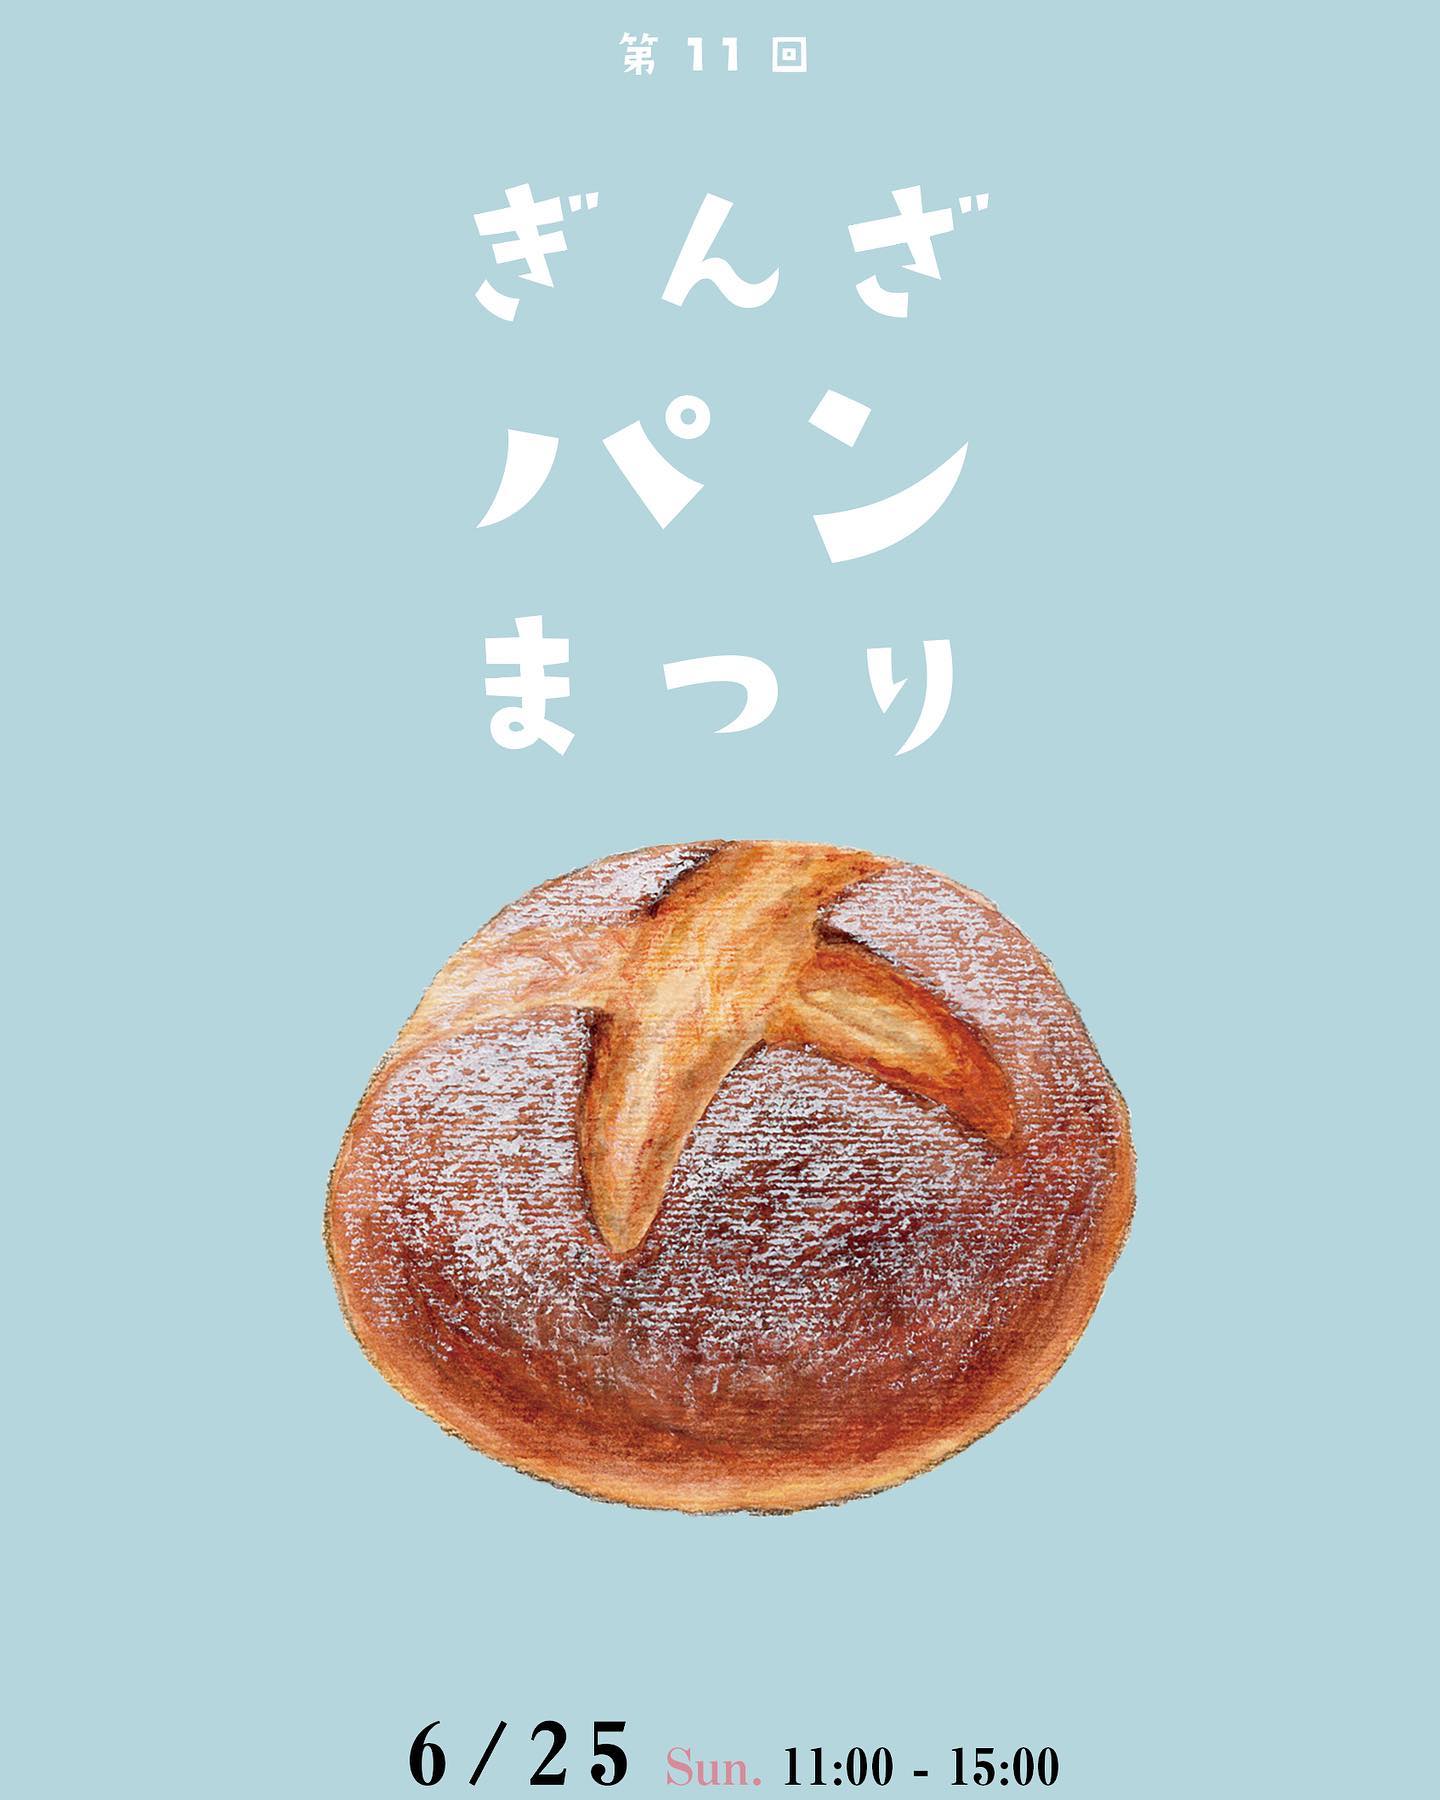 【鶴岡イベント6/25】第11回 ぎんざパンまつりが開催されます！パン好き編集長が気になるパンは？（鶴岡銀座商店街）